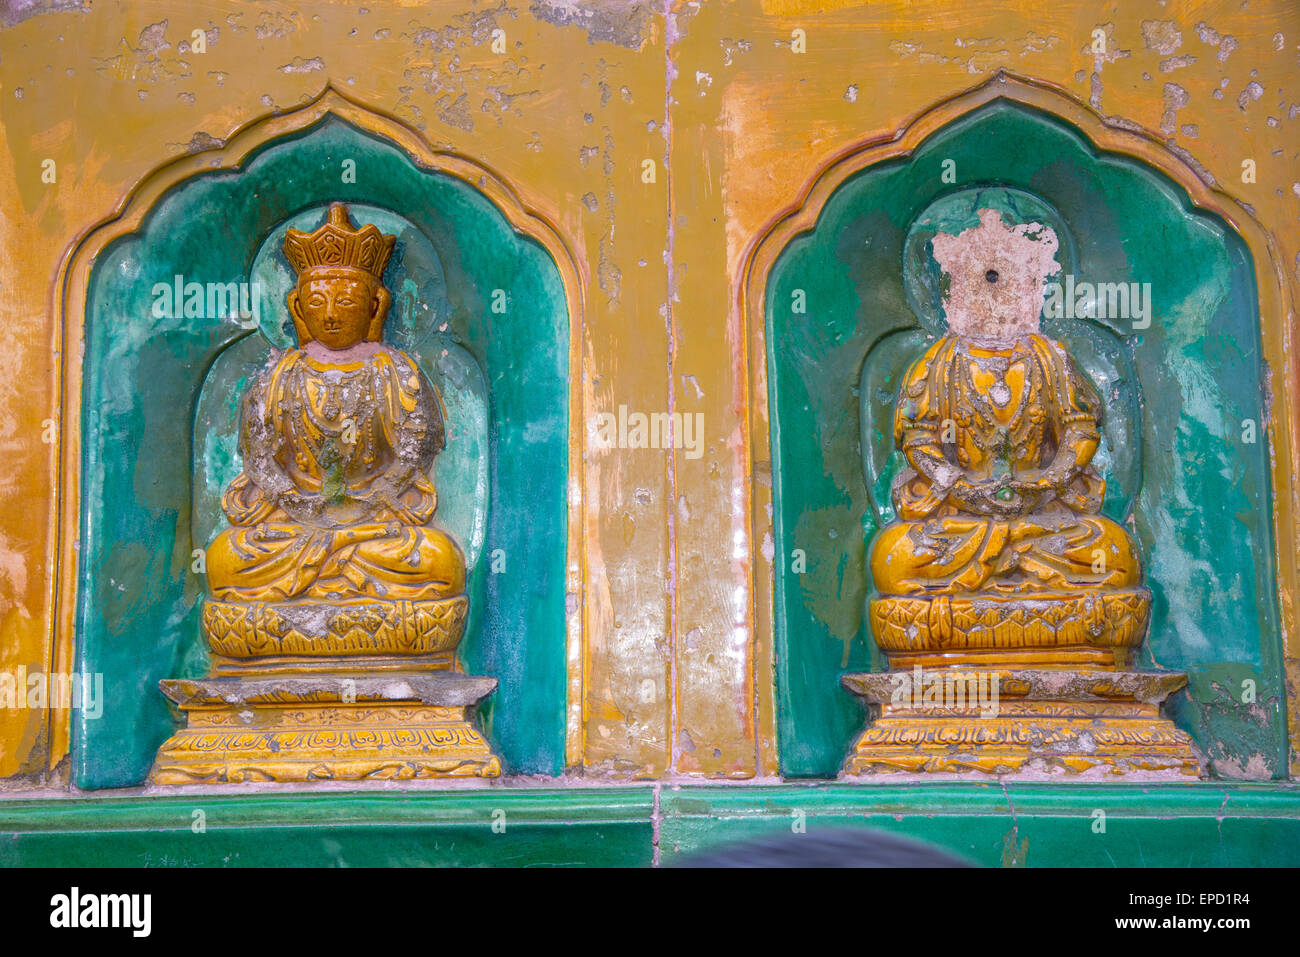 Les petites sculptures de bouddha au palais d'été de Beijing Chine Banque D'Images